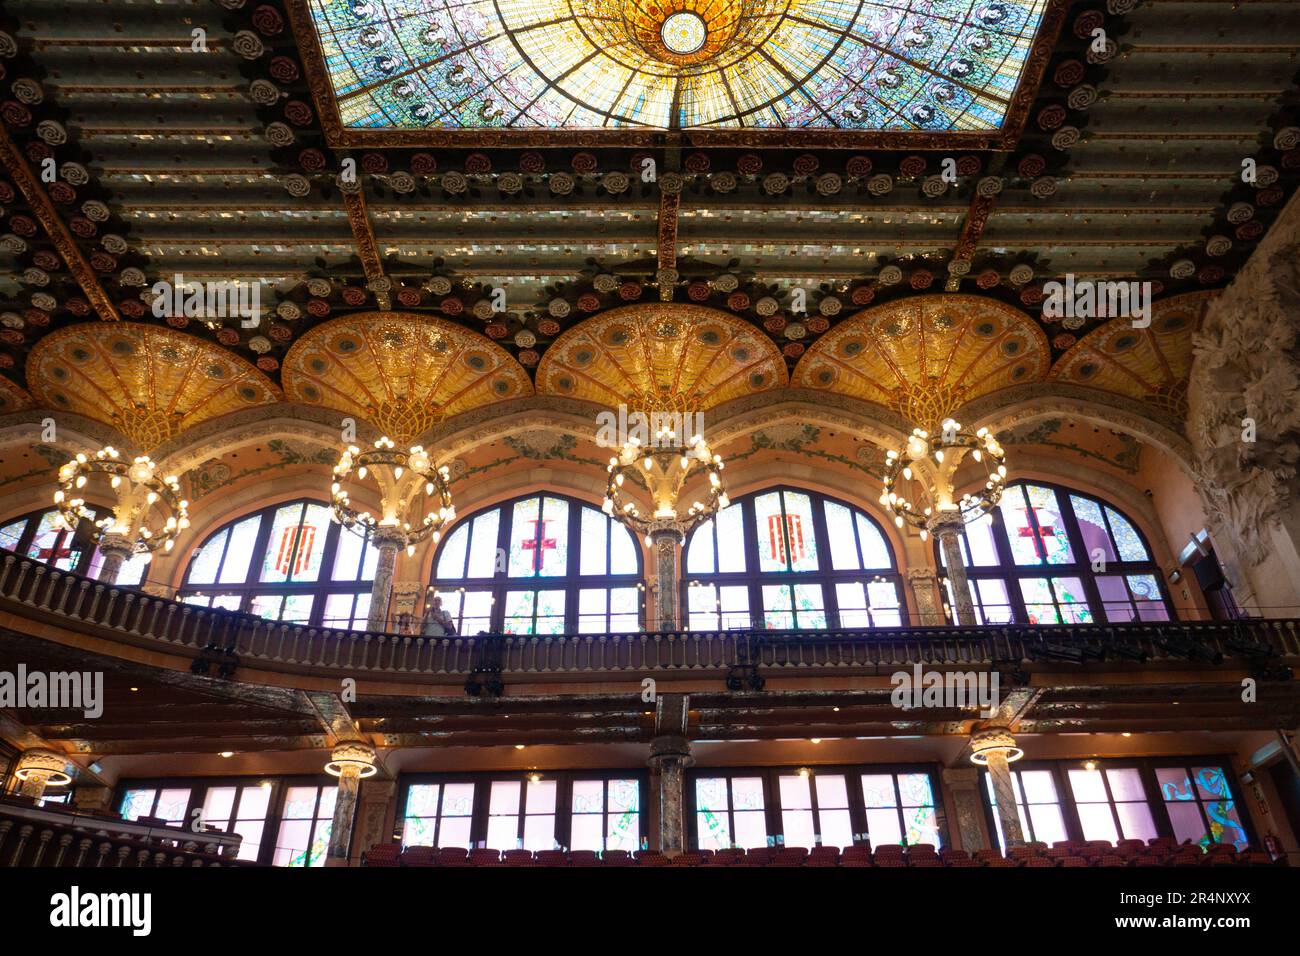 Le Palais de la musique catalane (salle de concert), site classé au patrimoine mondial de l'UNESCO, est l'incarnation du style Art Nouveau moderniste. Barcelone, Espagne. Banque D'Images